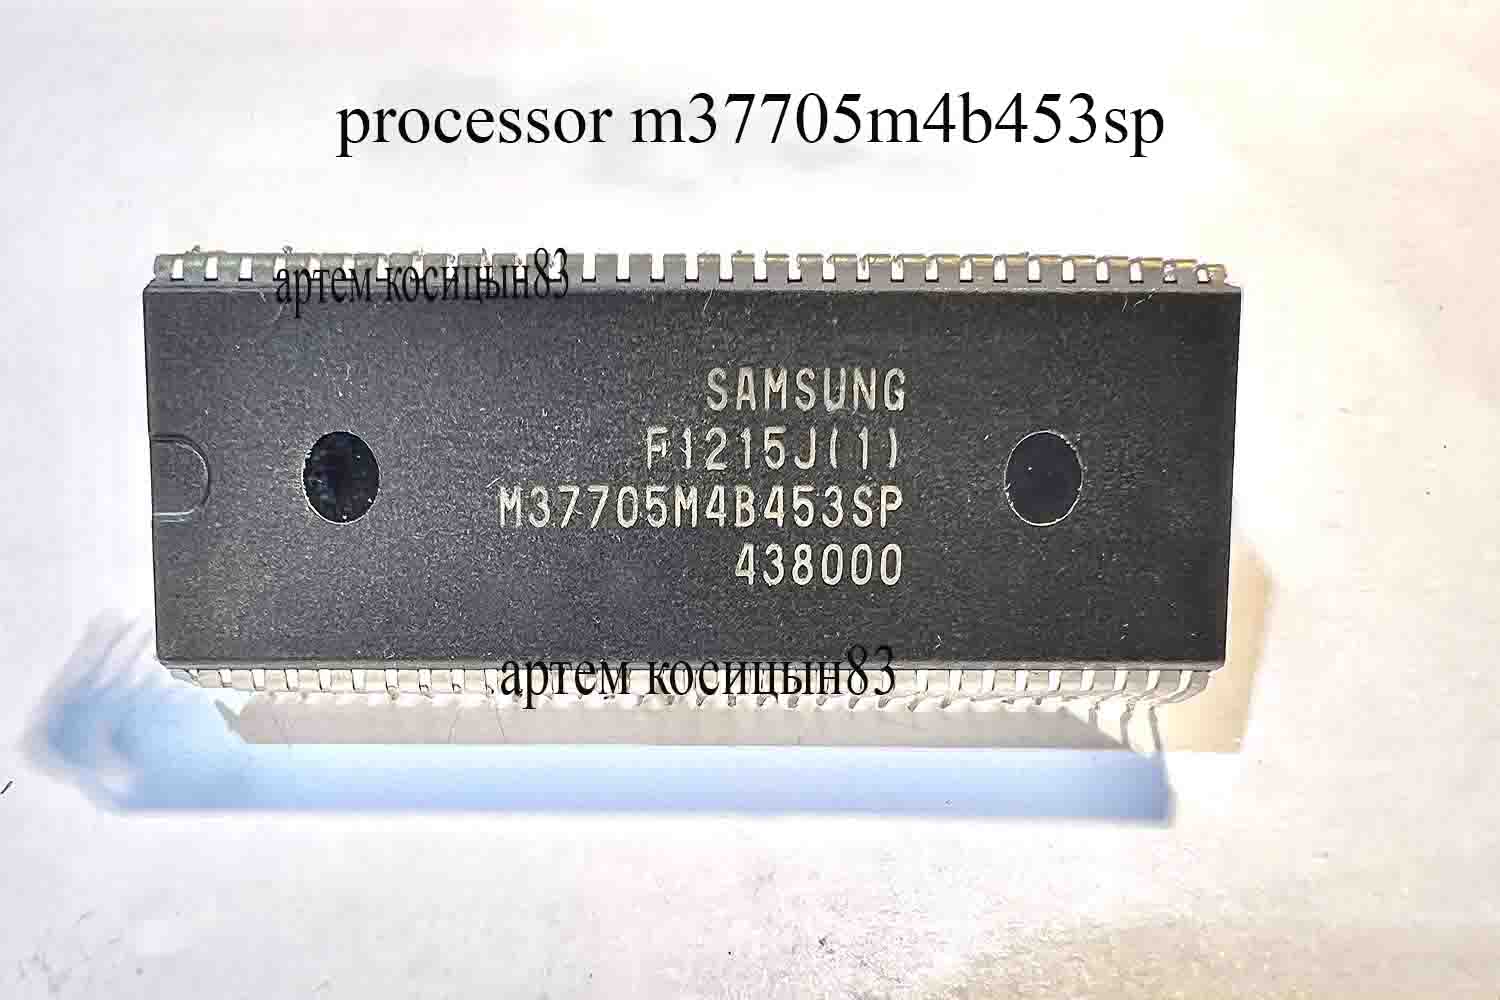 processor m37705m4b453sp